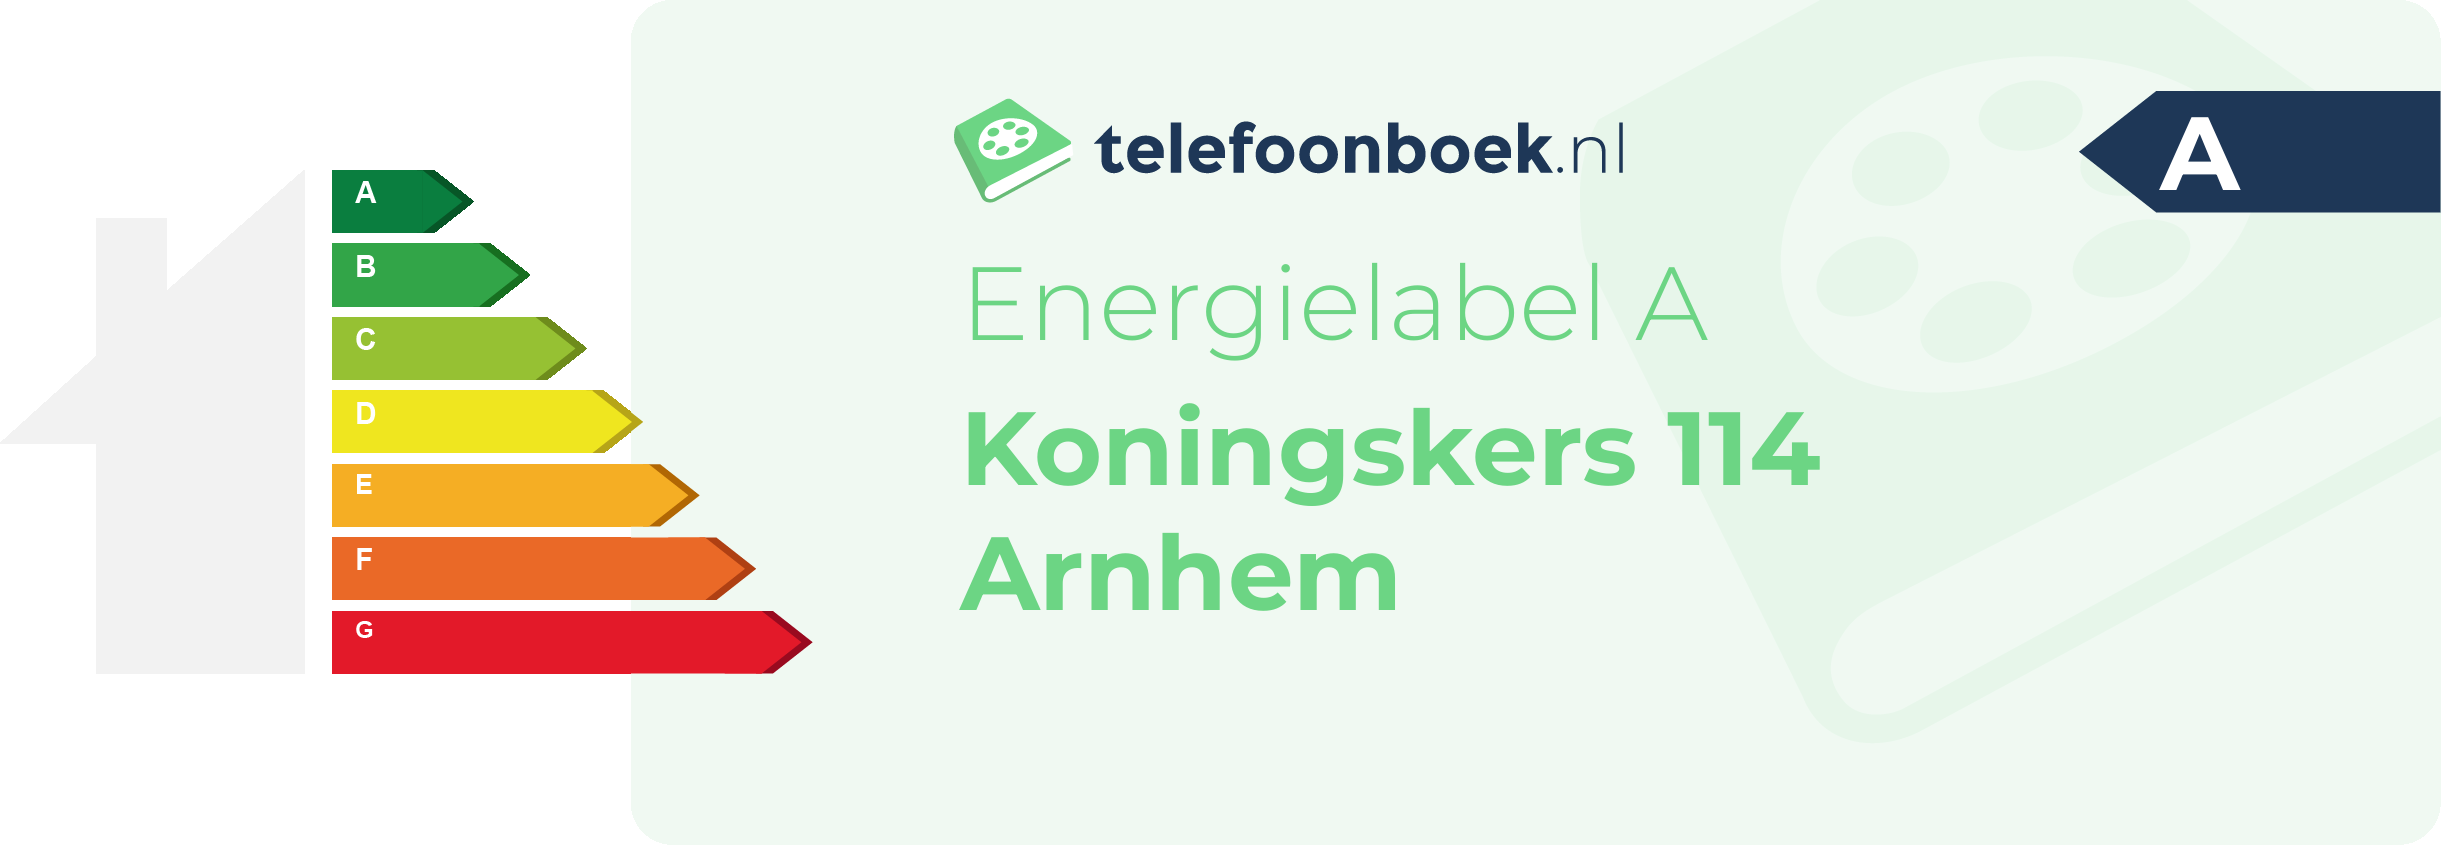 Energielabel Koningskers 114 Arnhem